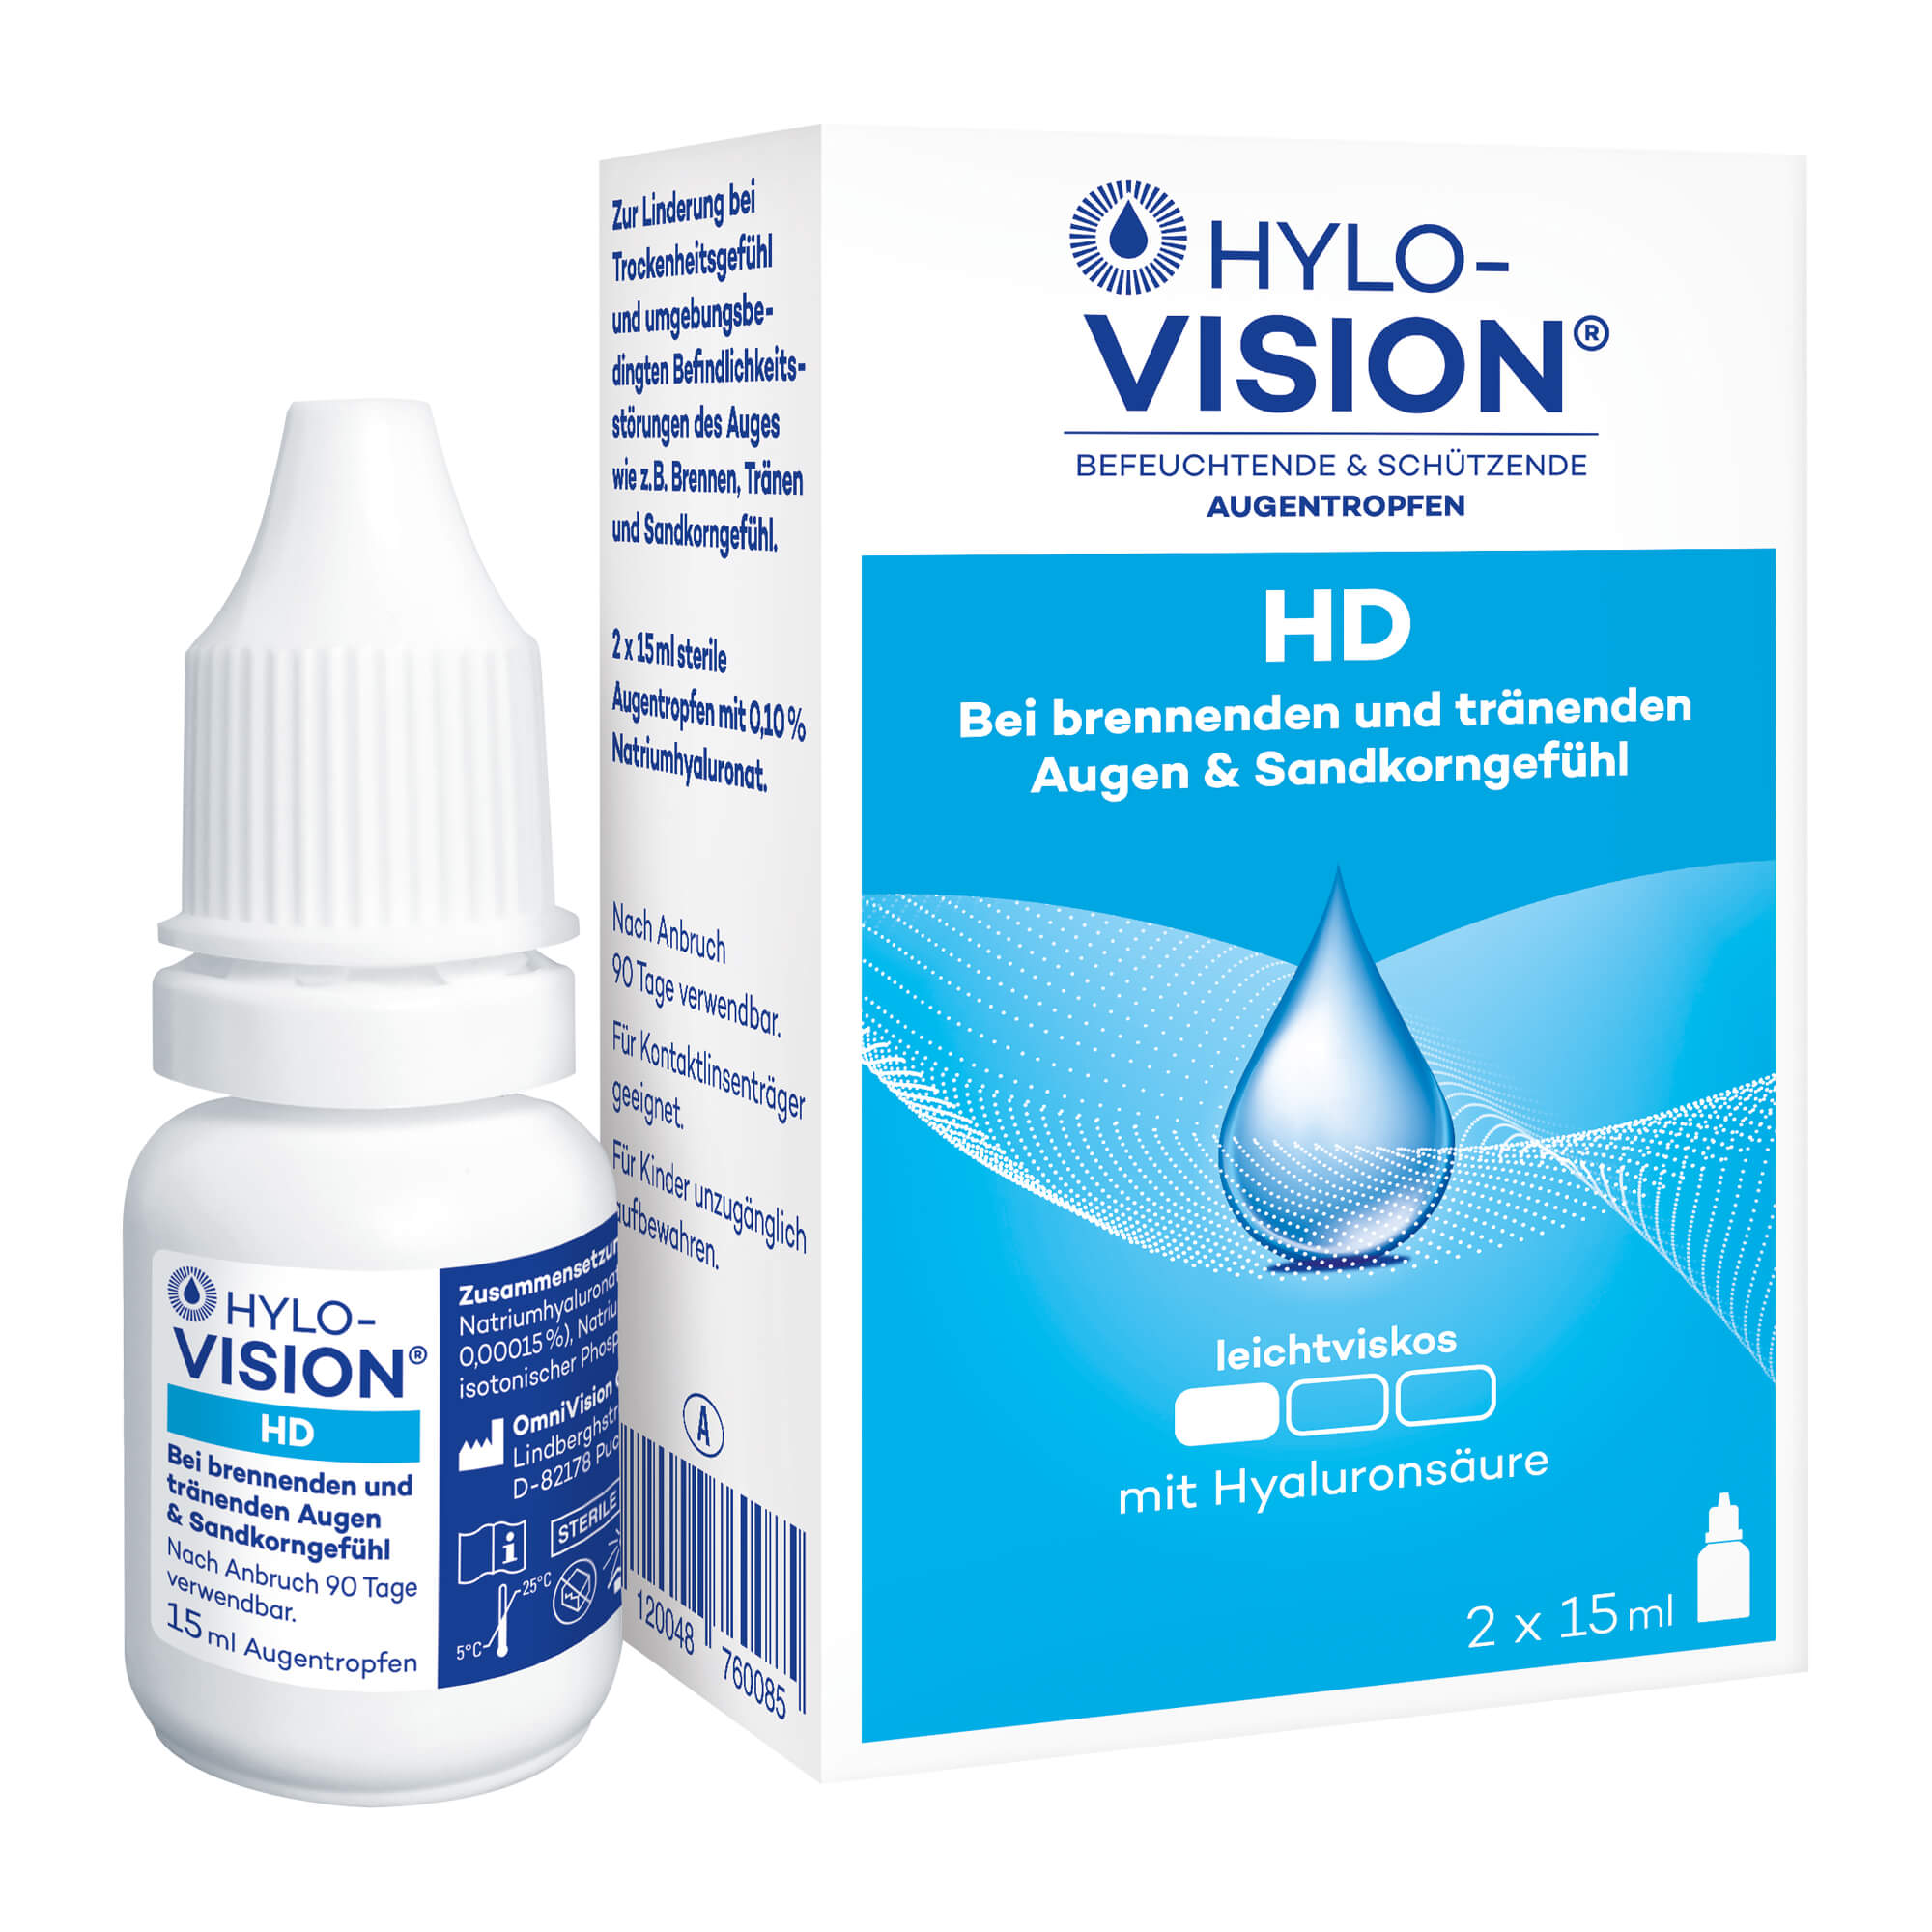 Befeuchtende & schützende Augentropfen. Zur Linderung bei Trockenheitsgefühl und umgebungsbedingten Befindlichkeitsstörungen des Auges.